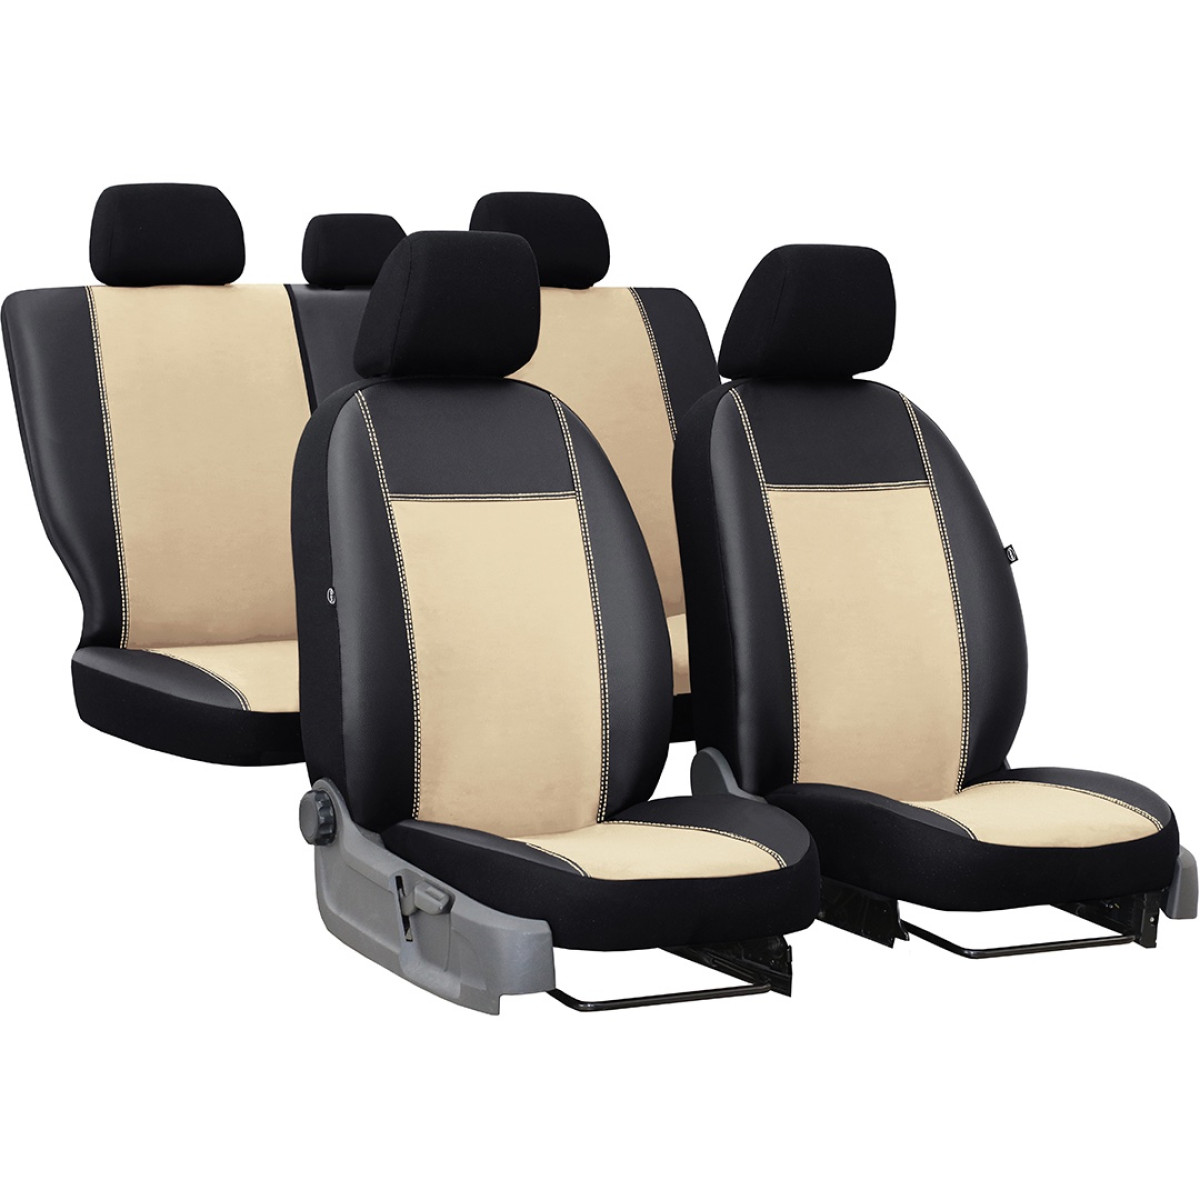 Mercedes Benz Vito Seats UK Online